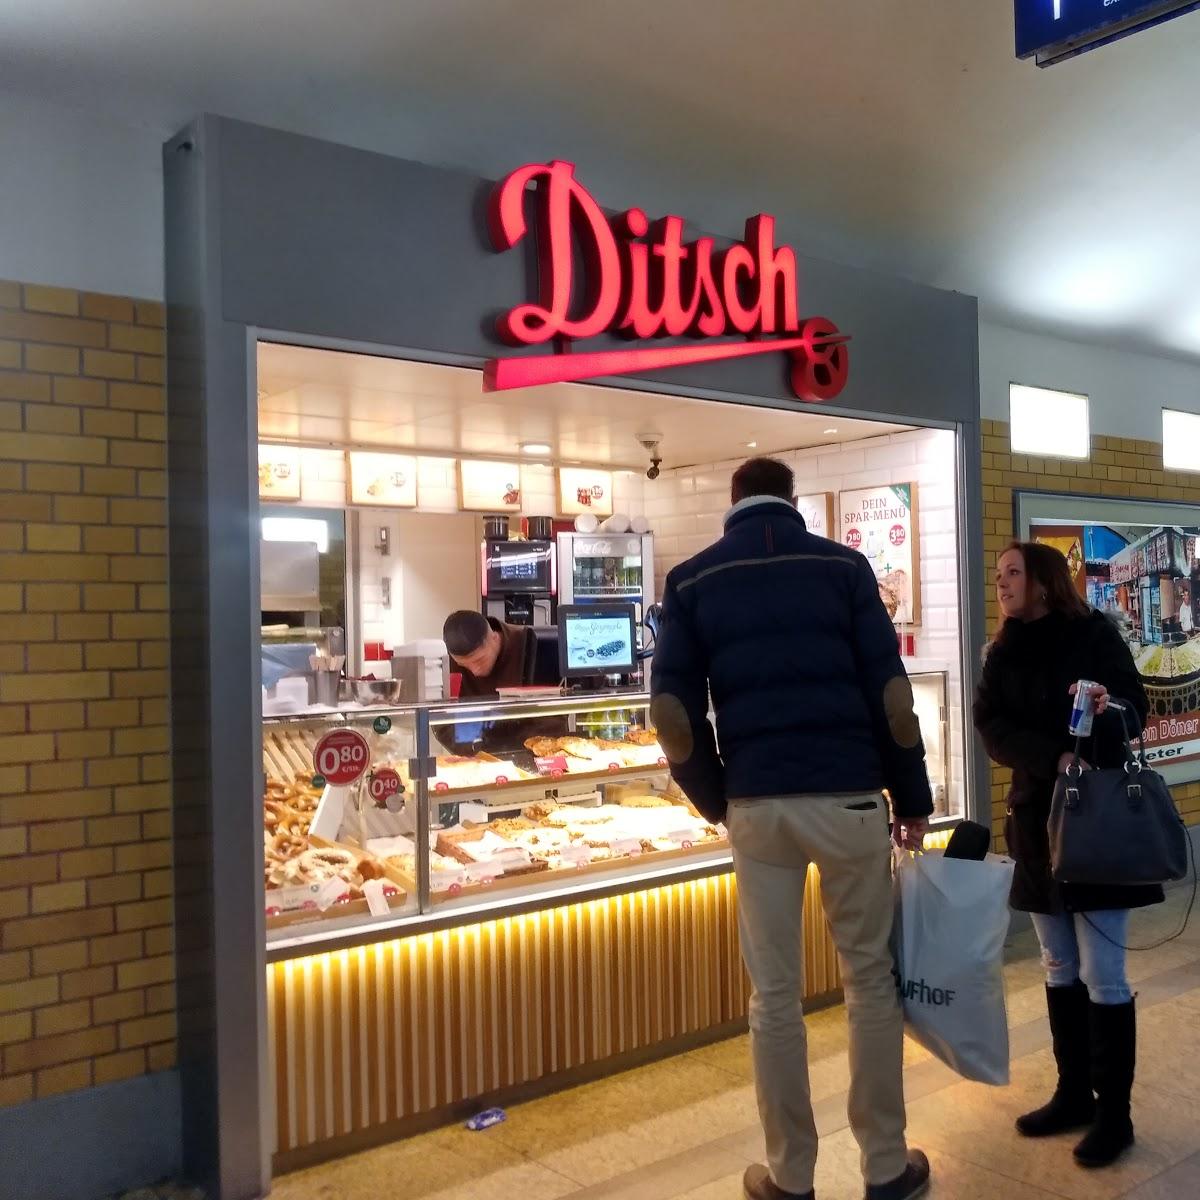 Restaurant "Ditsch" in Berlin